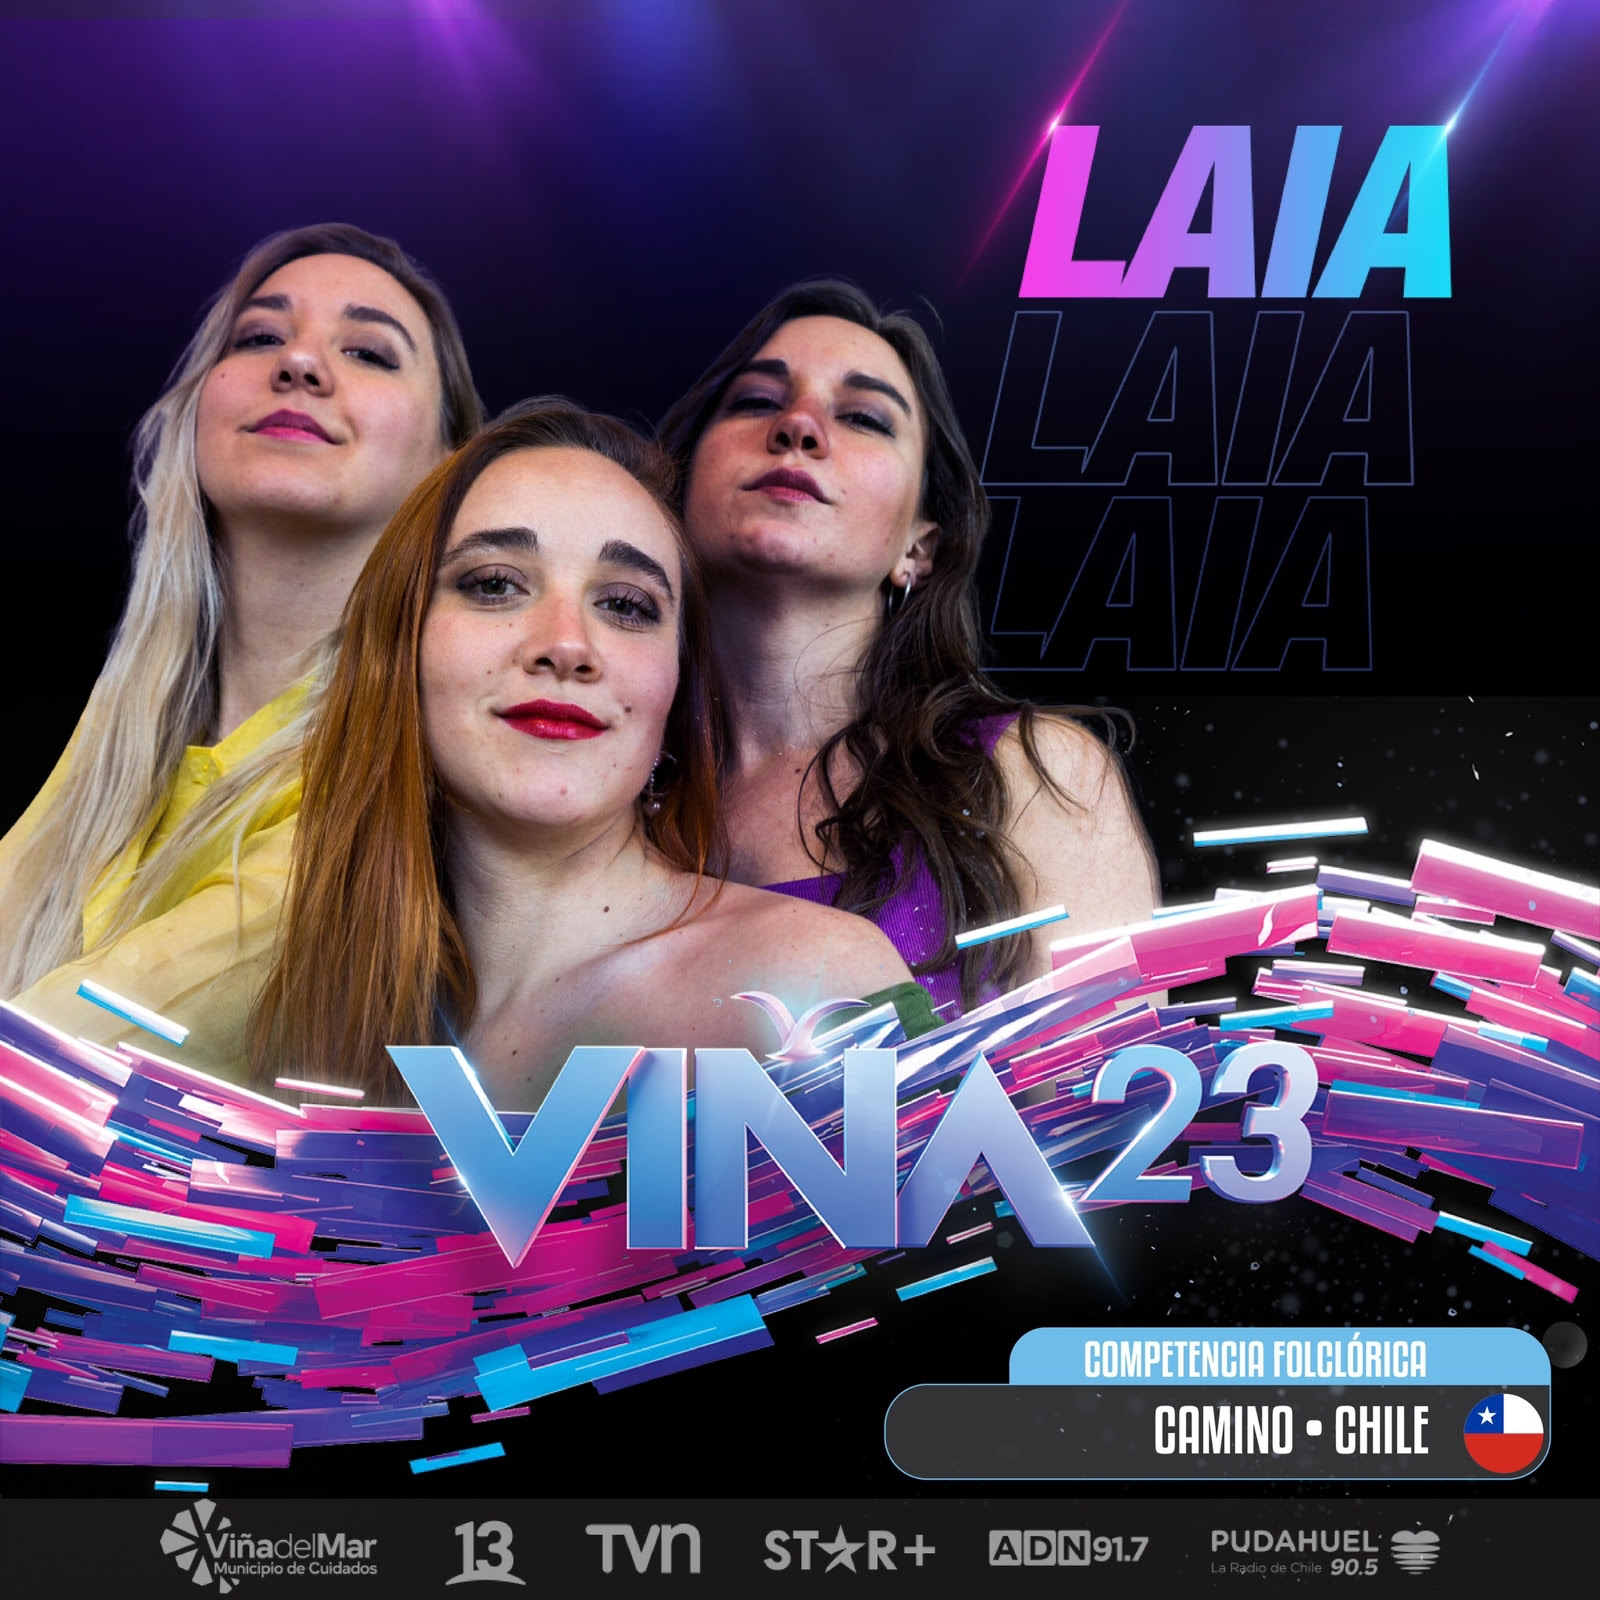 Laia representará a Chile en la competencia Folclórica del Festival de Viña